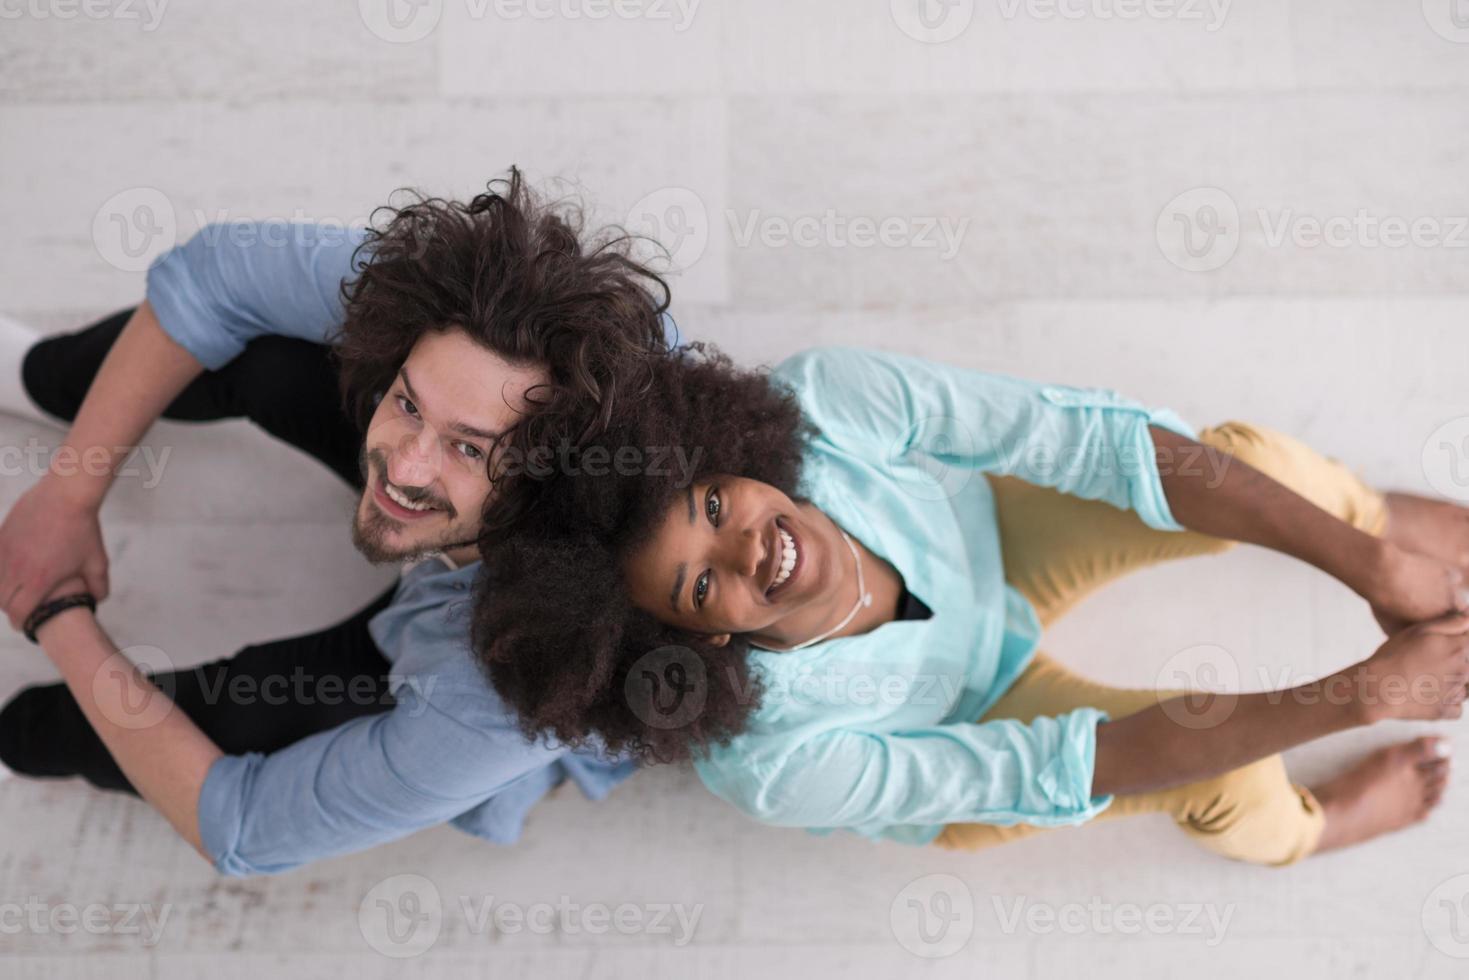 superiore Visualizza 0 seg allegro giovane multietnico coppia seduta foto